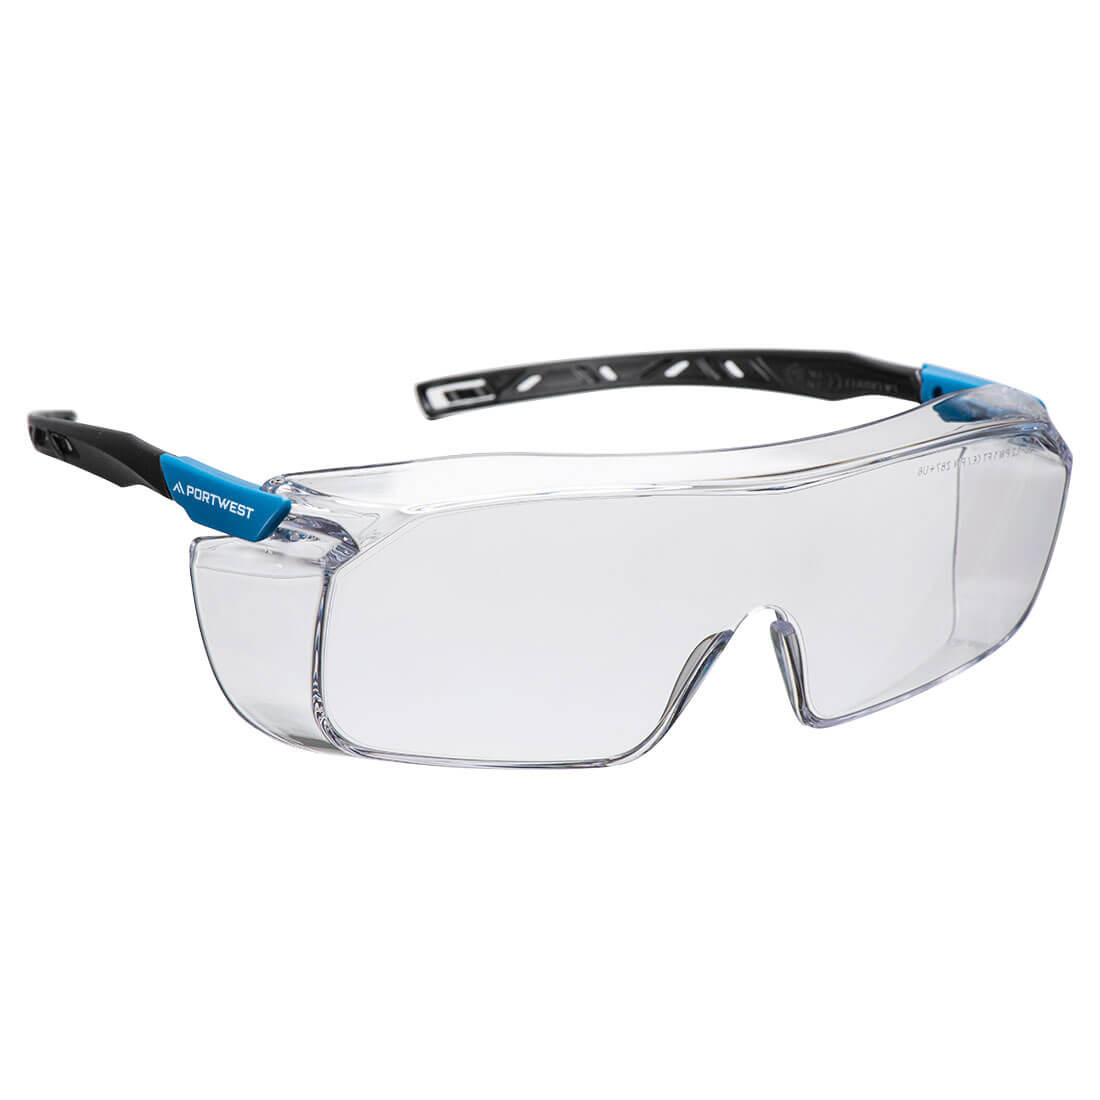 Gafas de seguridad Top OTG - Equipamientos de protección personal